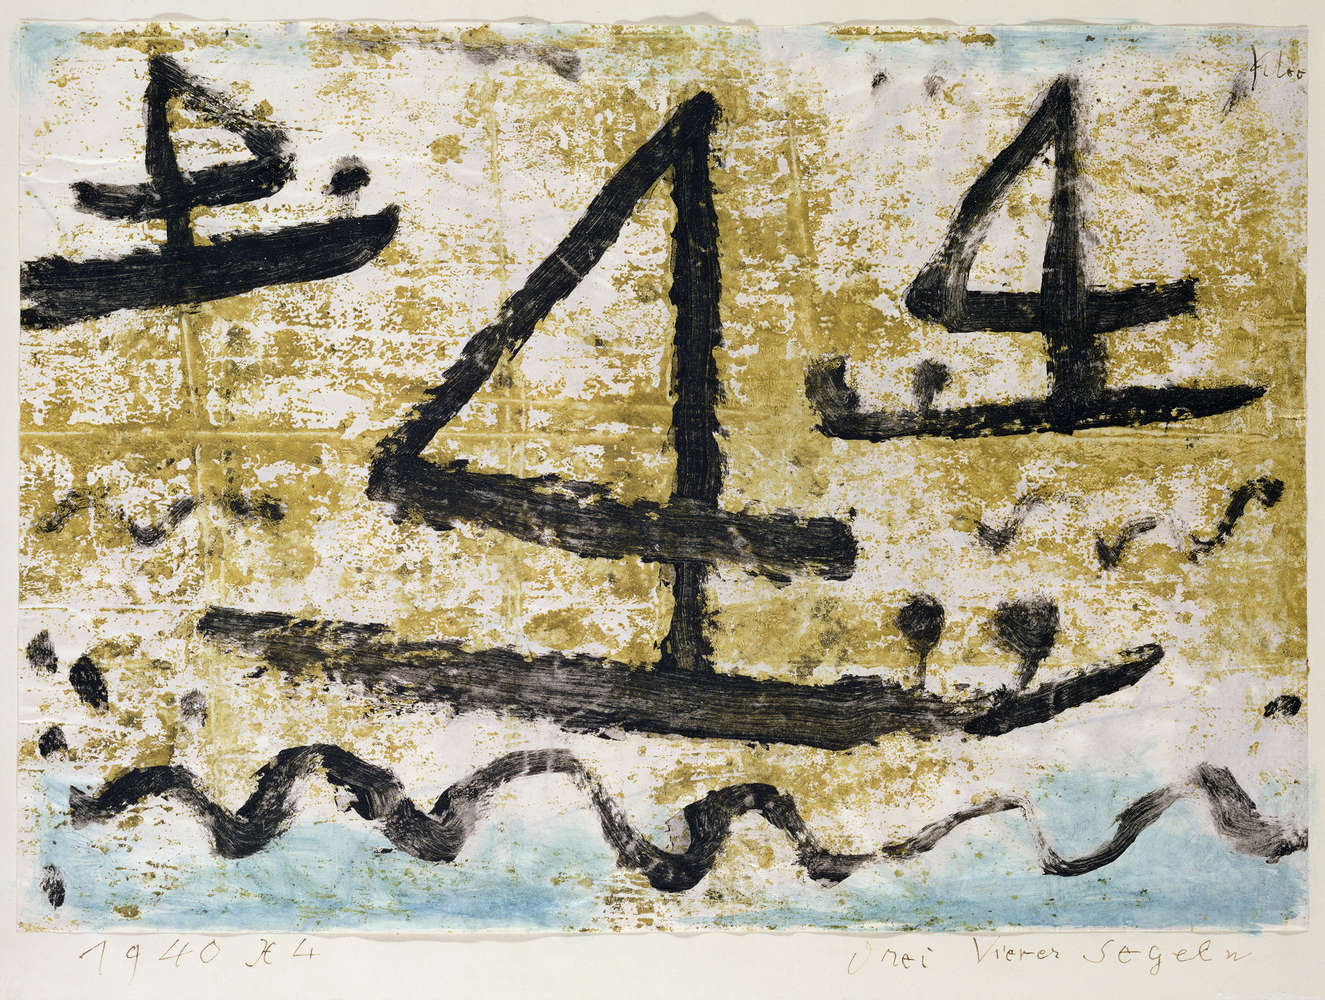             Zeilschepen" muurschildering van Paul Klee
        